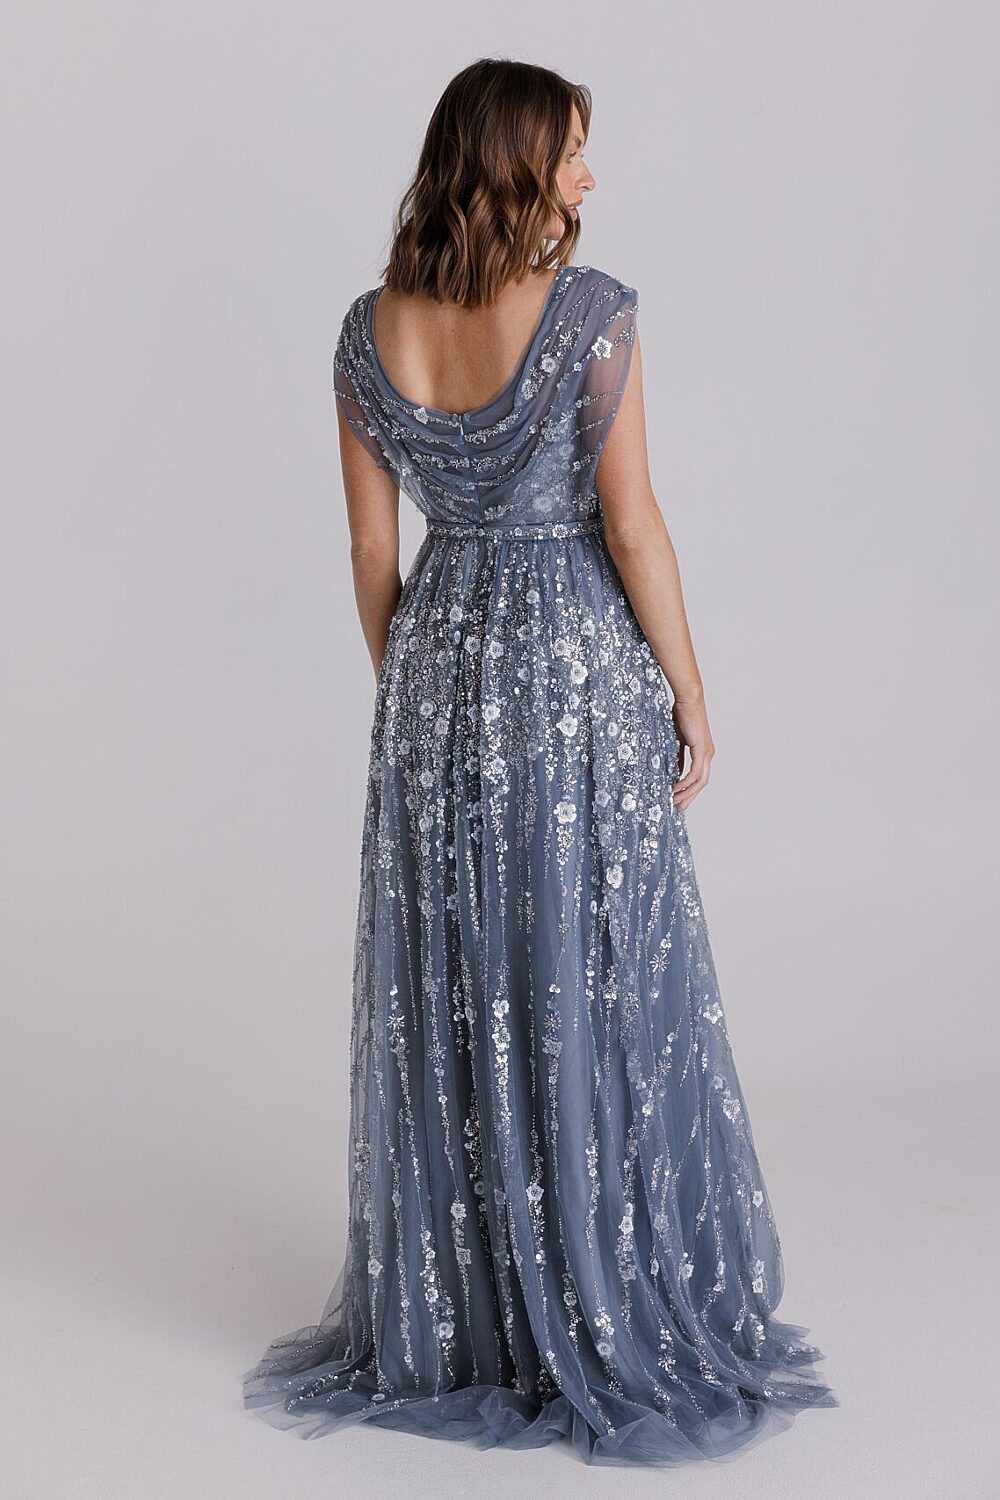 Solene MO9 La Belle dress by Tania Olsen Designs